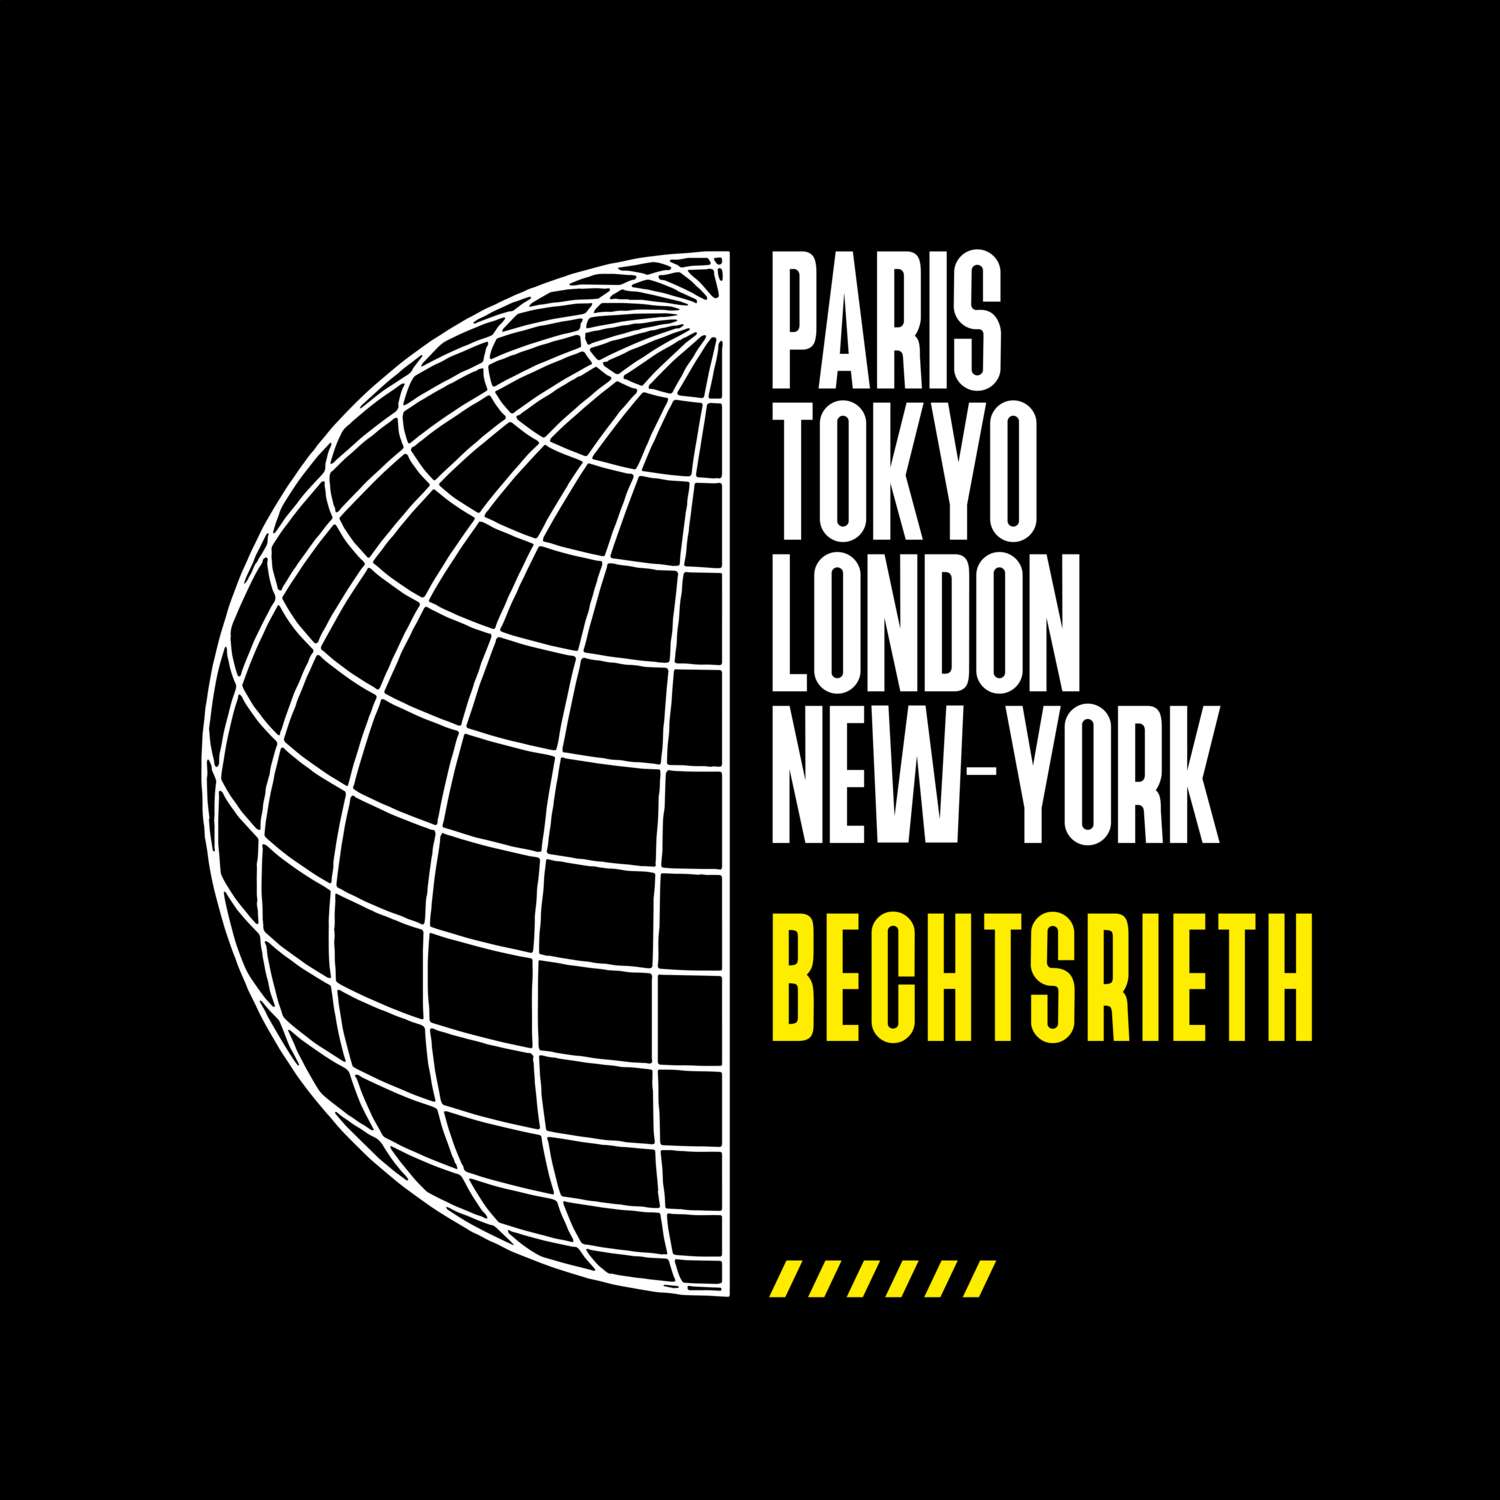 Bechtsrieth T-Shirt »Paris Tokyo London«